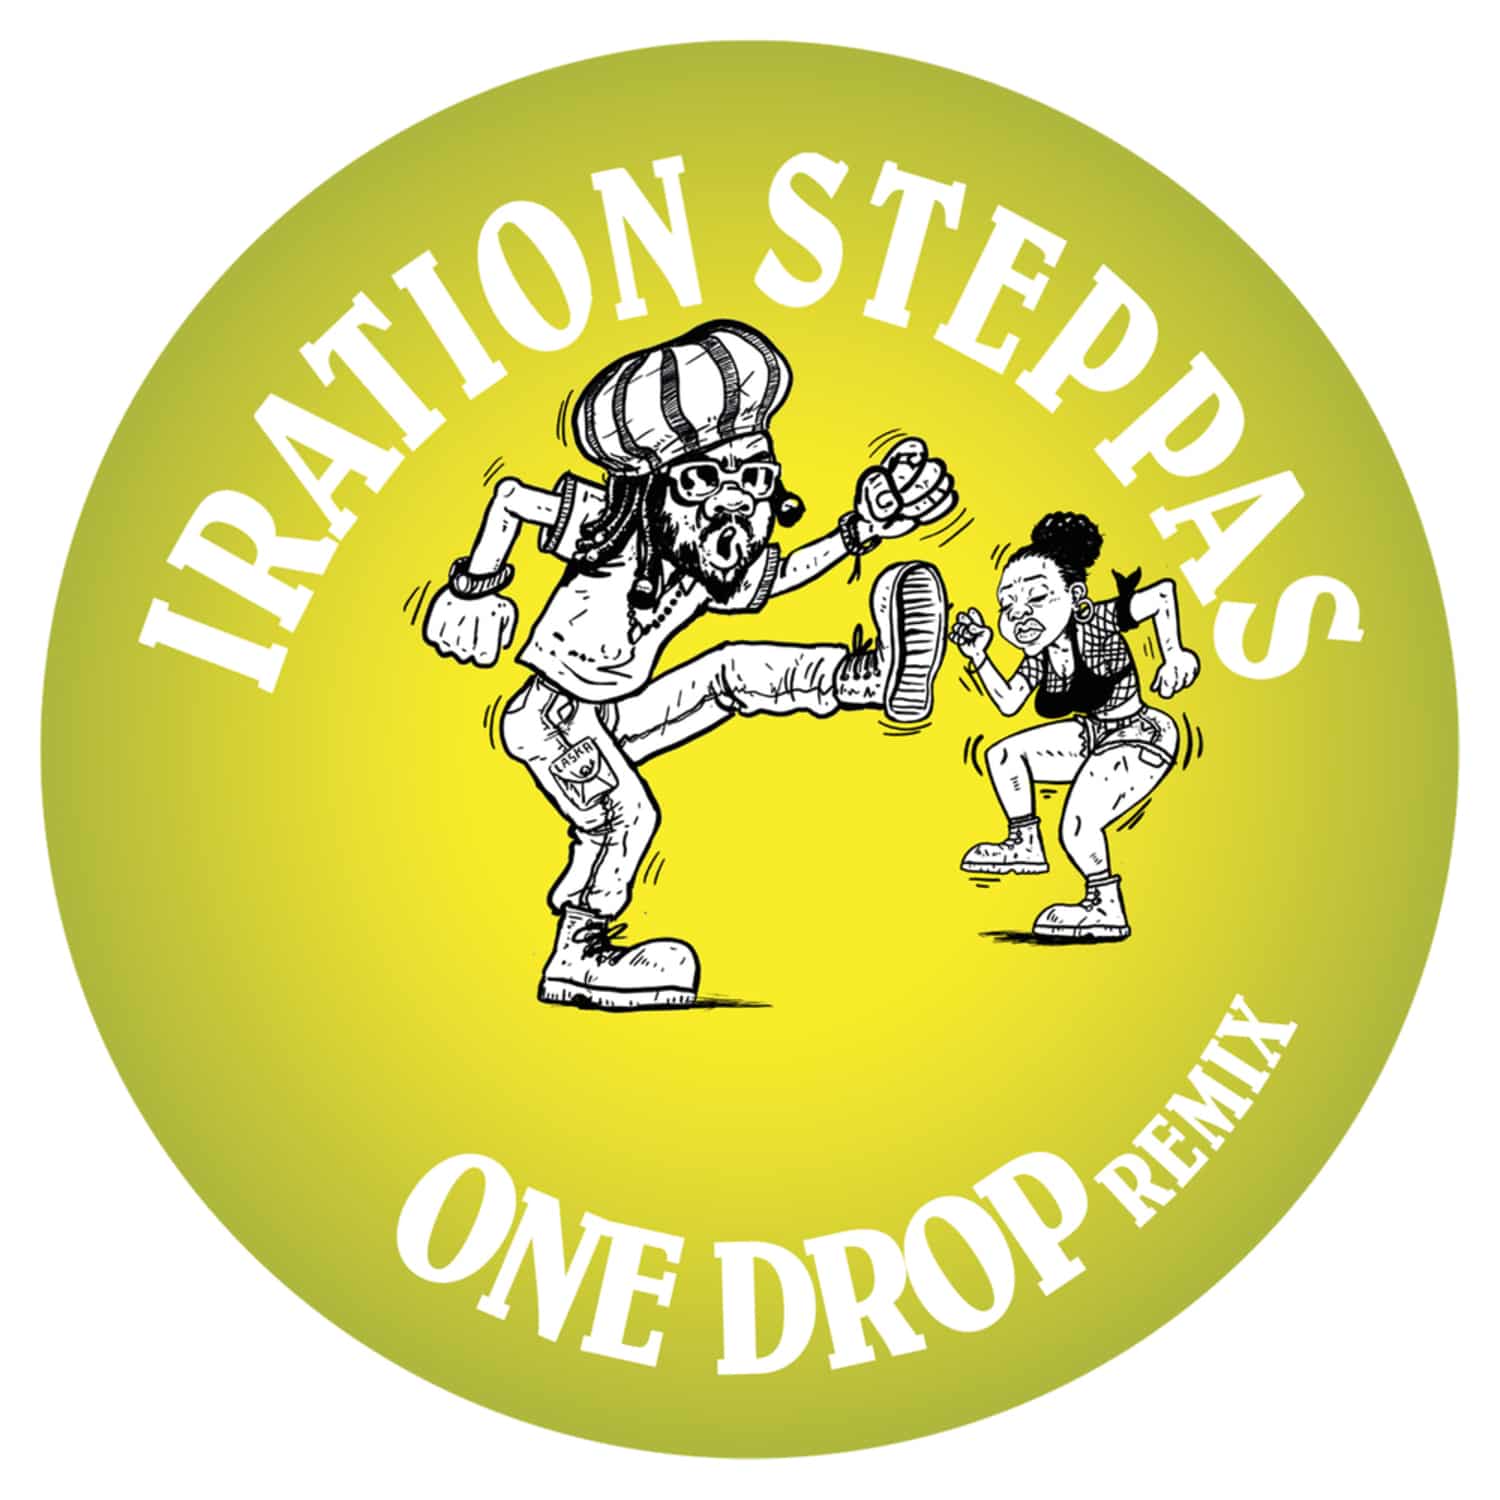 Iration Steppas - ONE DROP 